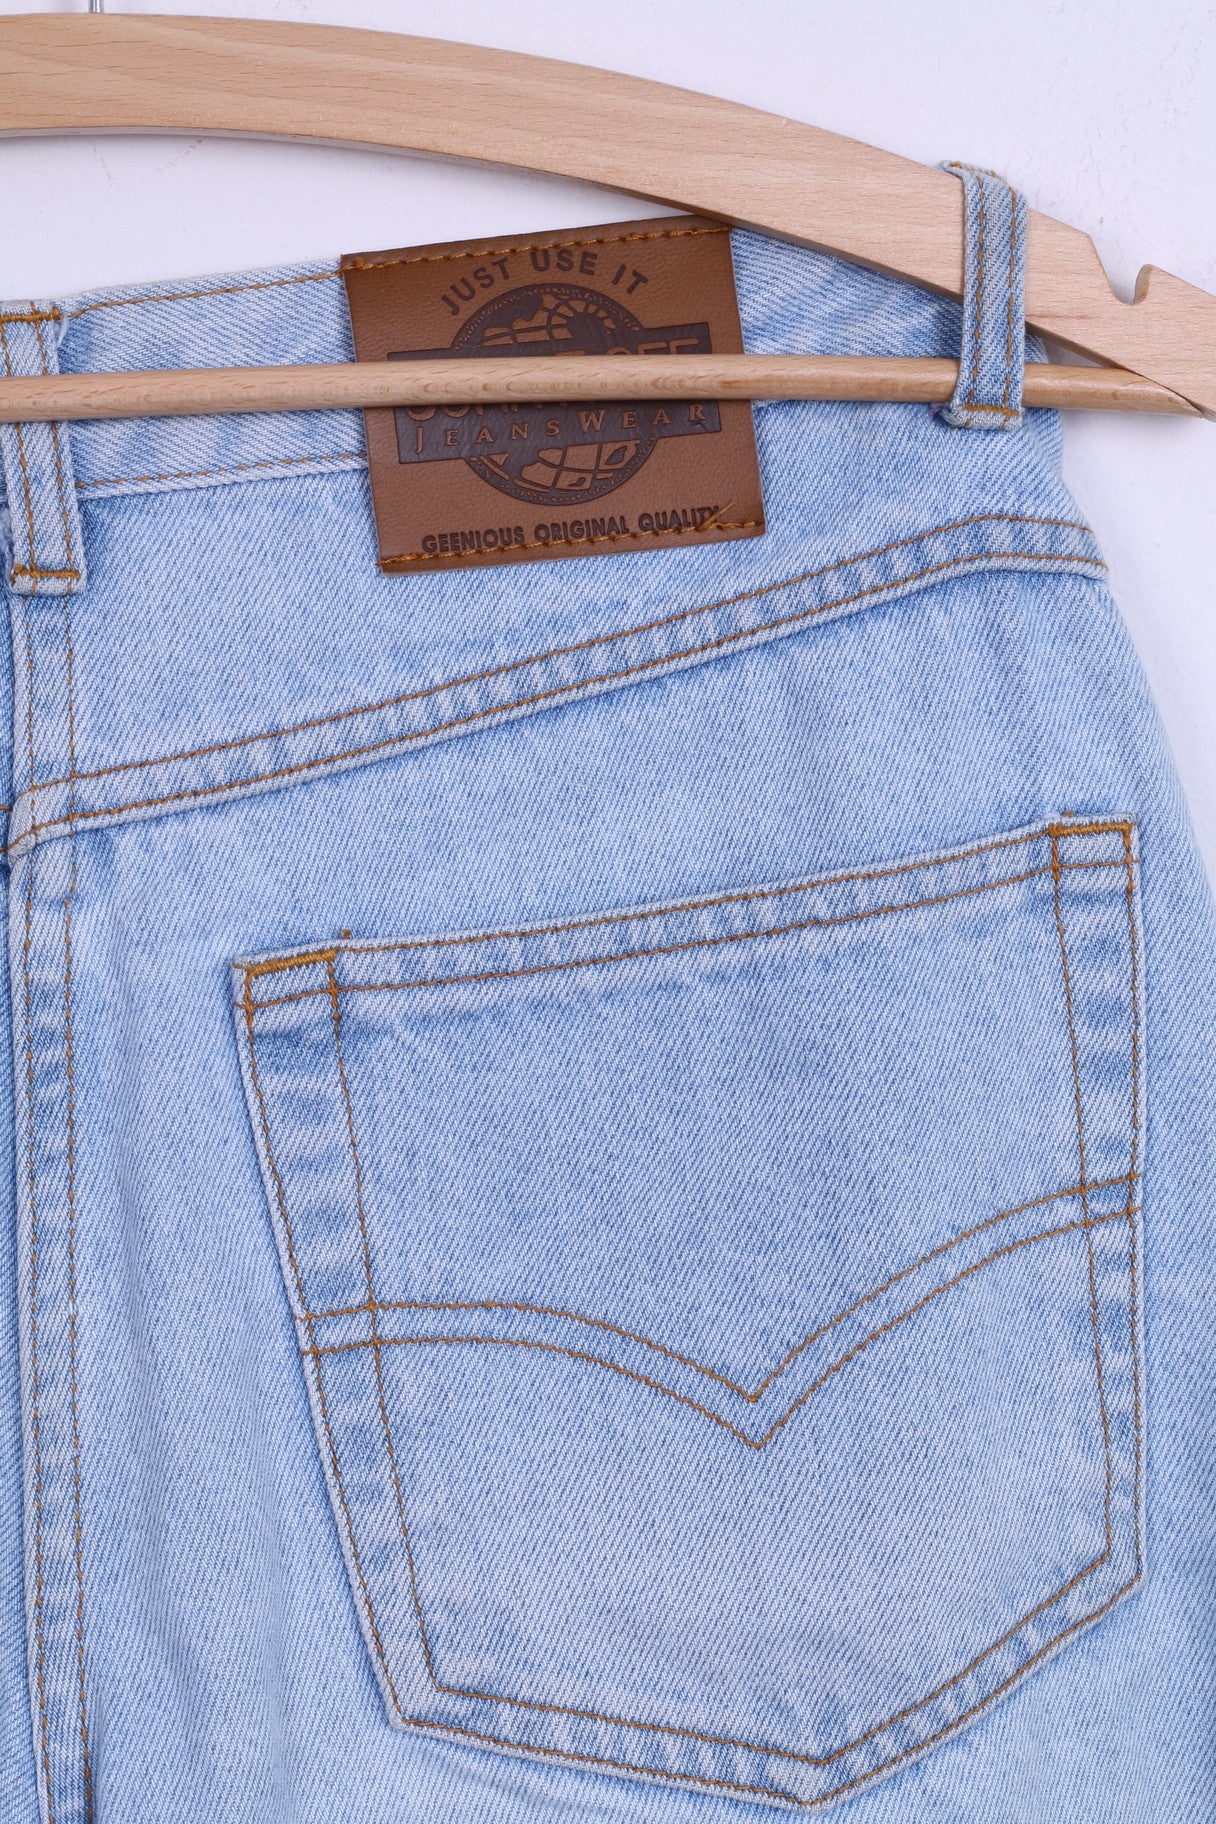 JOHN F.GEE Womens 38 Trousers Jeans Light Blue High Waist Denim Retro Cotton